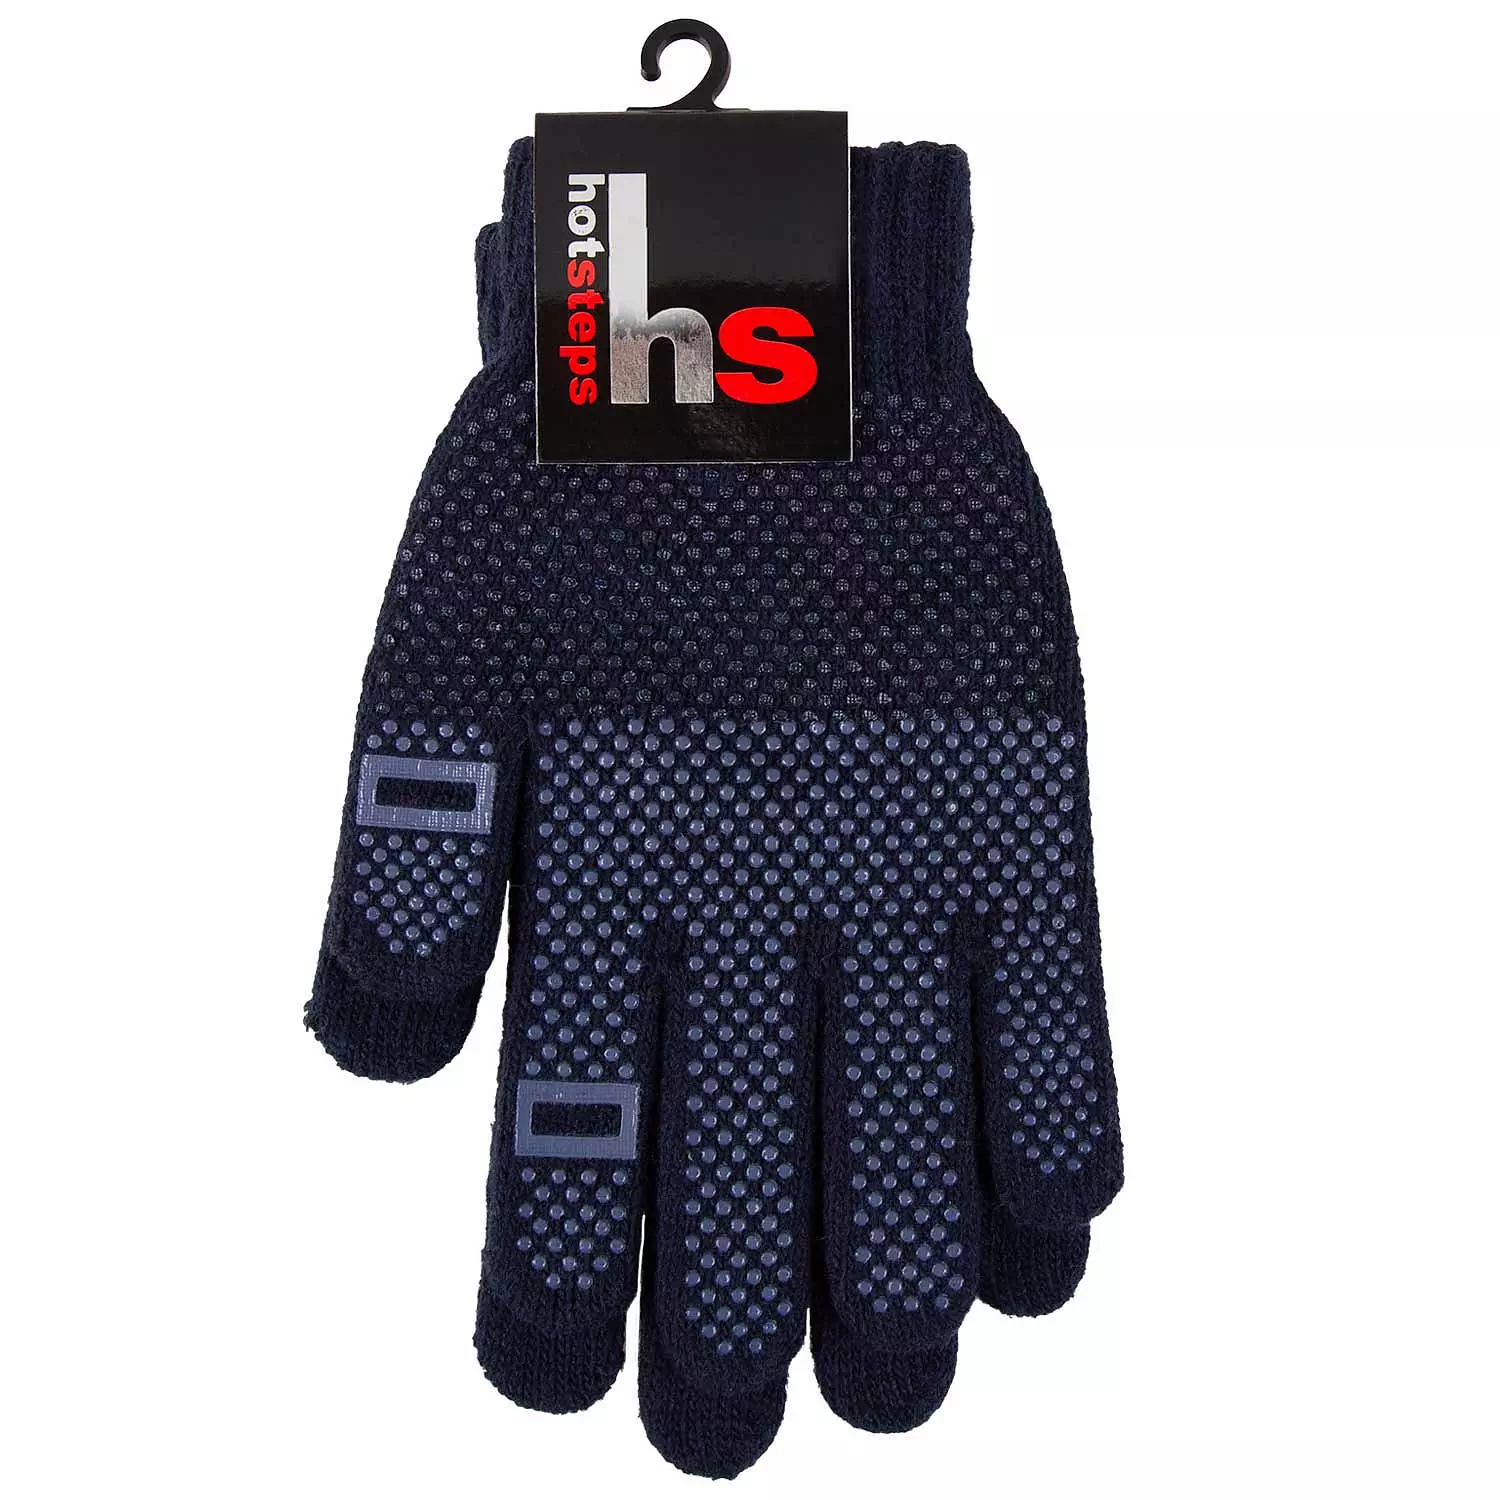 Anti-slip touchscreen gloves for men or women